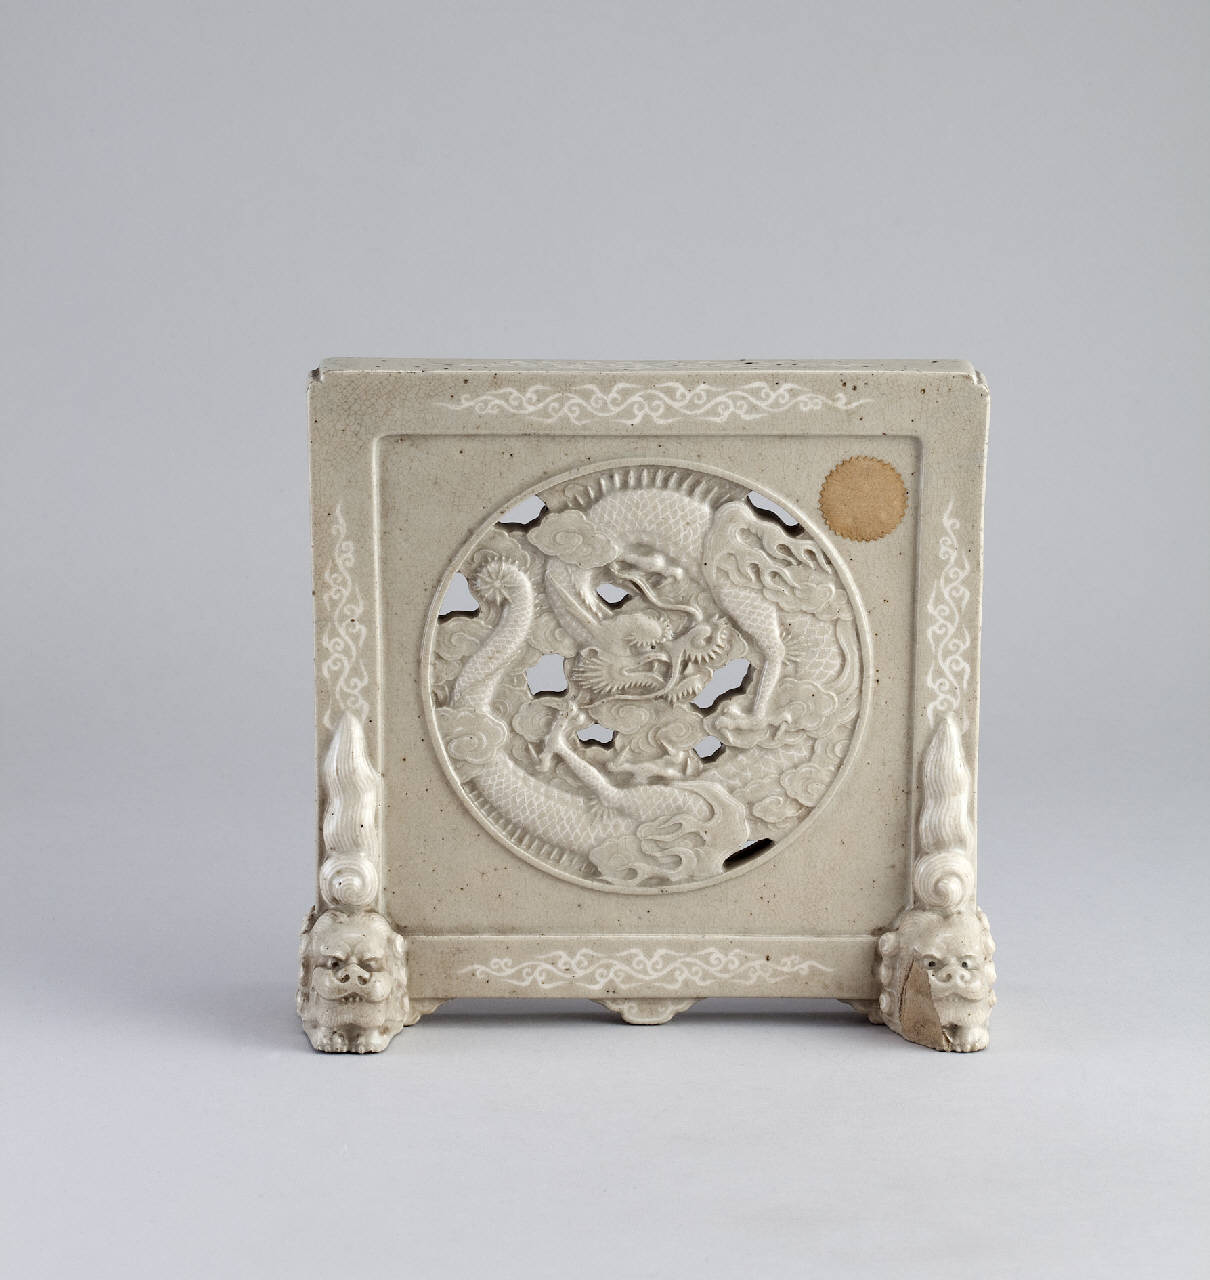 drago, leone cinese (schermo da tavolo) - manifattura giapponese (secc. XVIII/ XIX||secc. XVIII/ XIX)